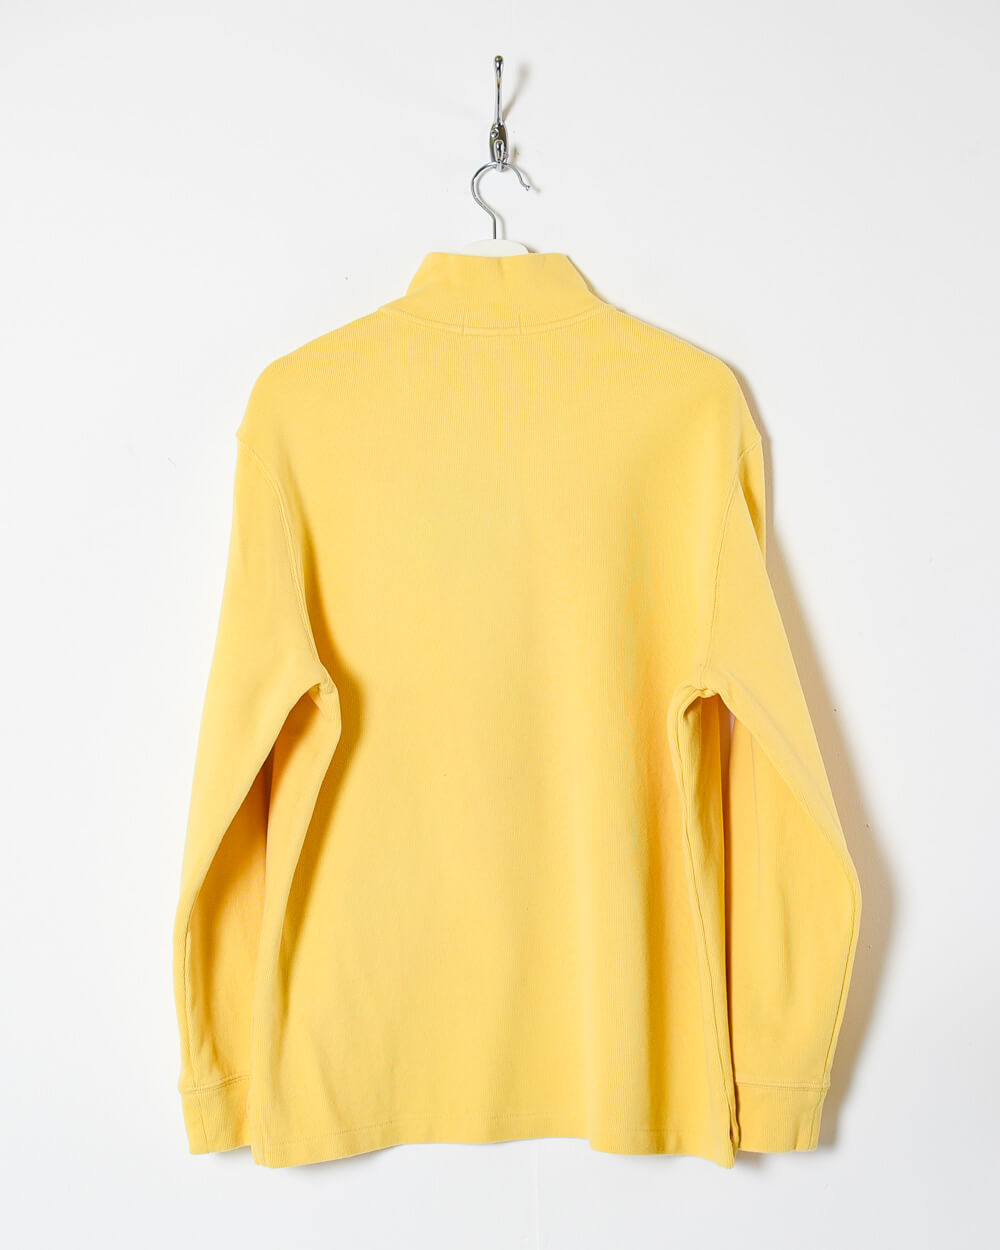 Yellow Ralph Lauren 1/4 Zip Sweatshirt - Large